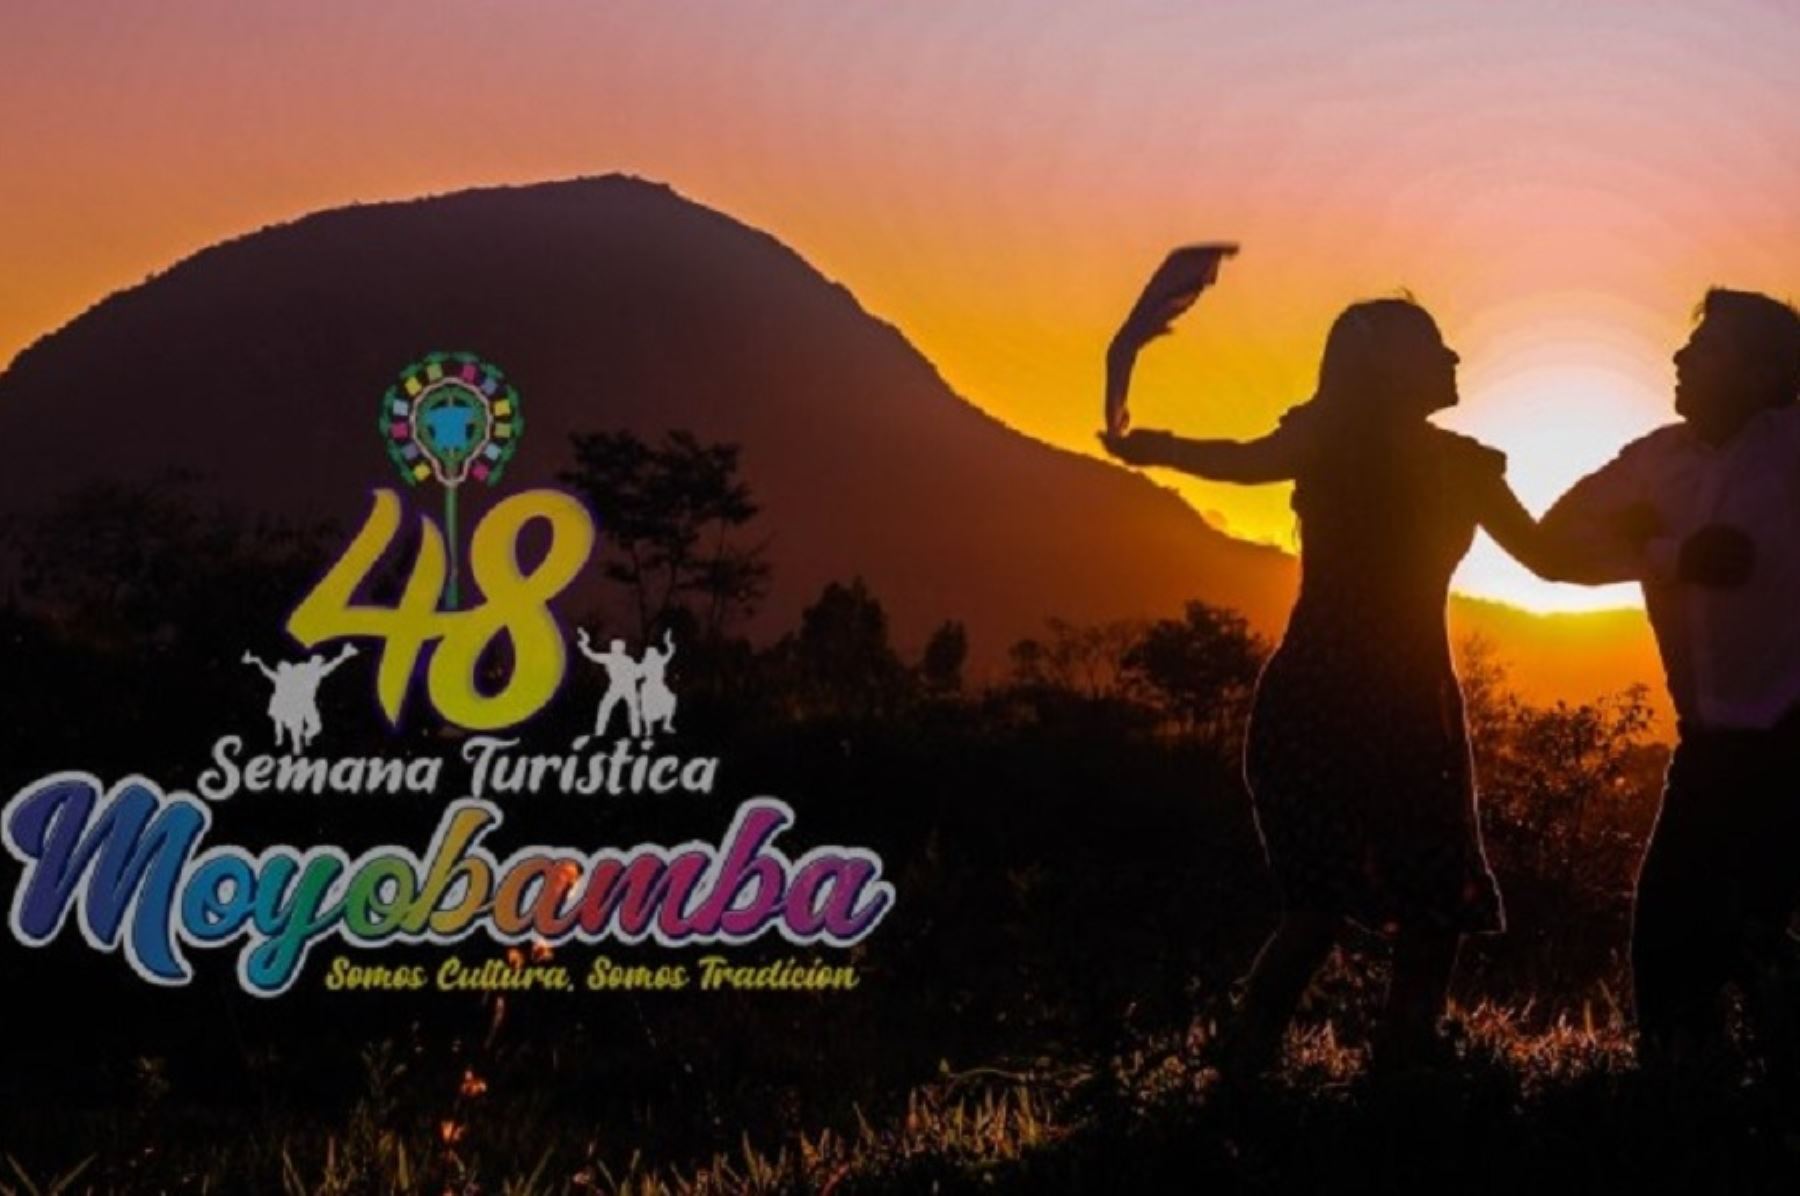 Moyobamba se alista a celebrar su 48° Semana Turística con un nutrido programa de actividades protocolares, culturales, deportivas, artísticas y gastronómicas que mostrarán lo mejor de la producción de esta emblemática provincia del departamento de San Martín.